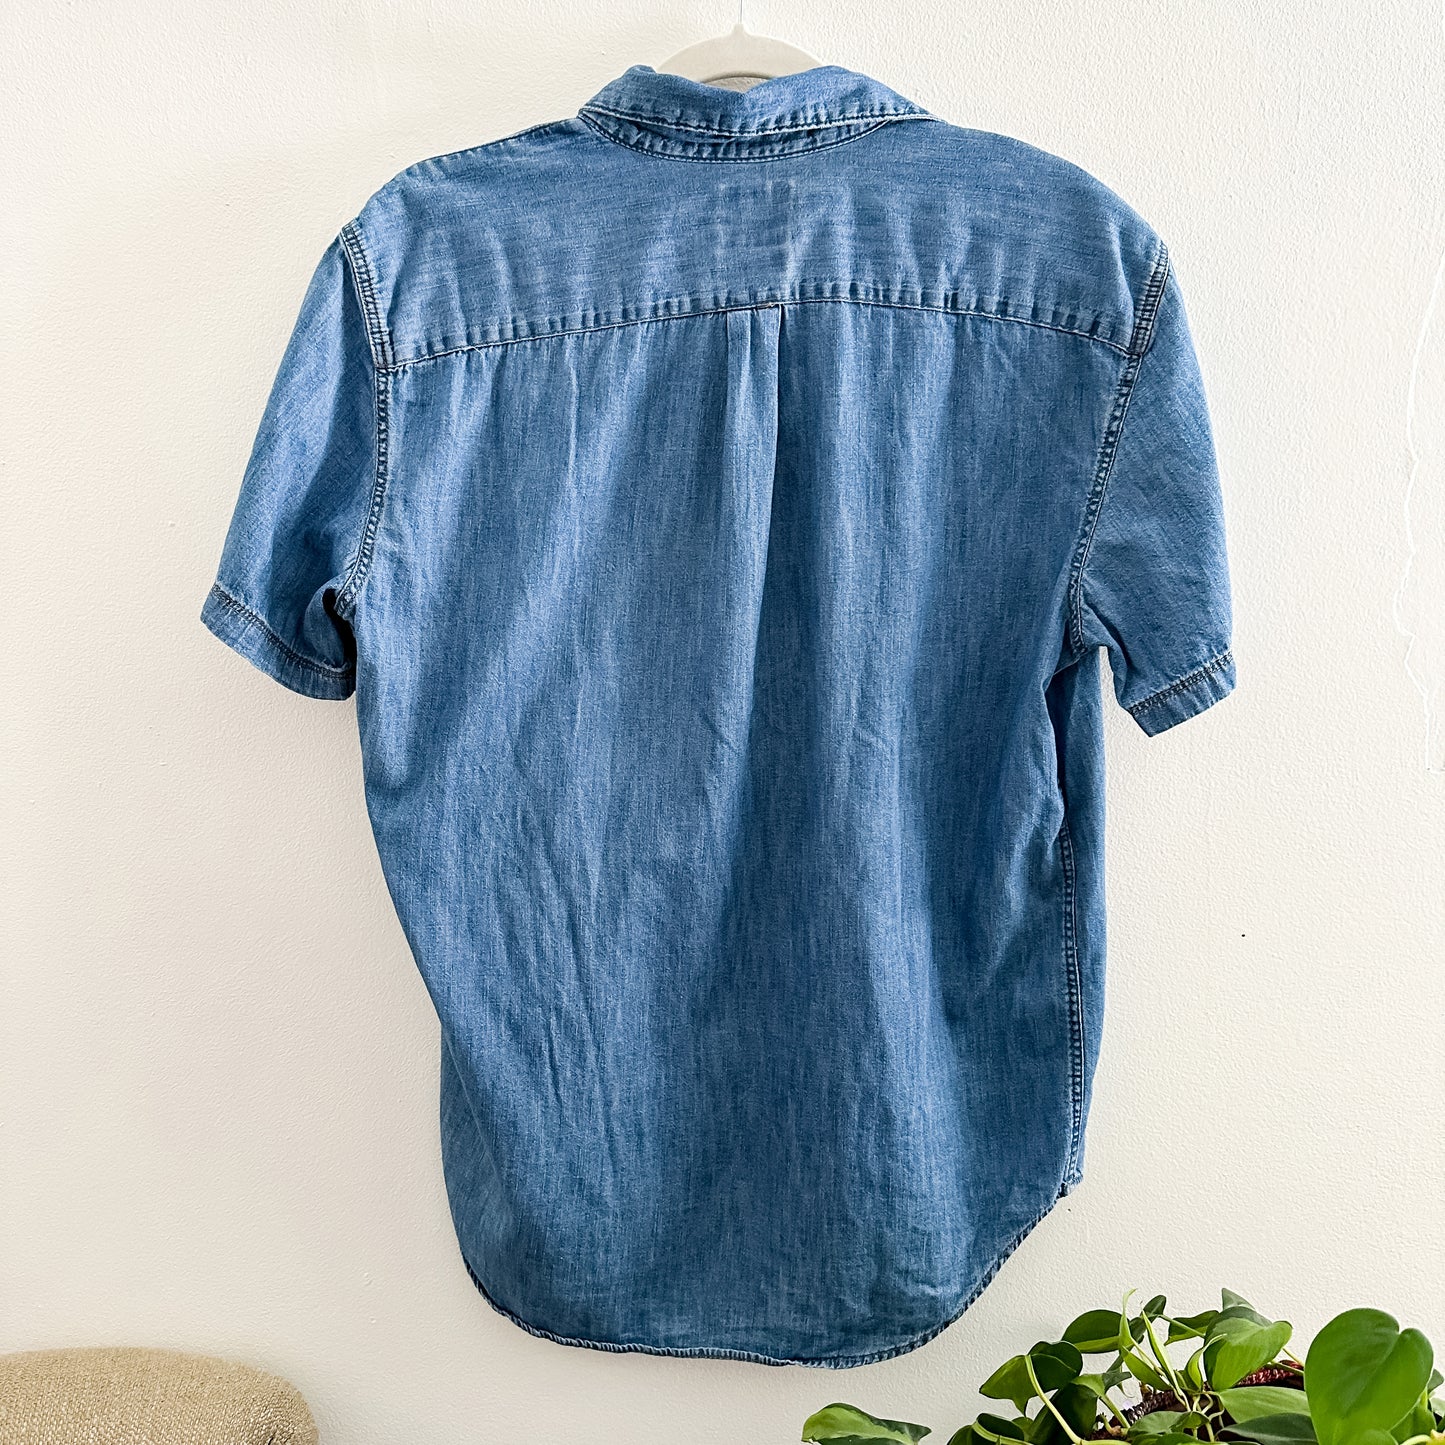 Gap Denim Short Sleeve Shirt (fits S-M)